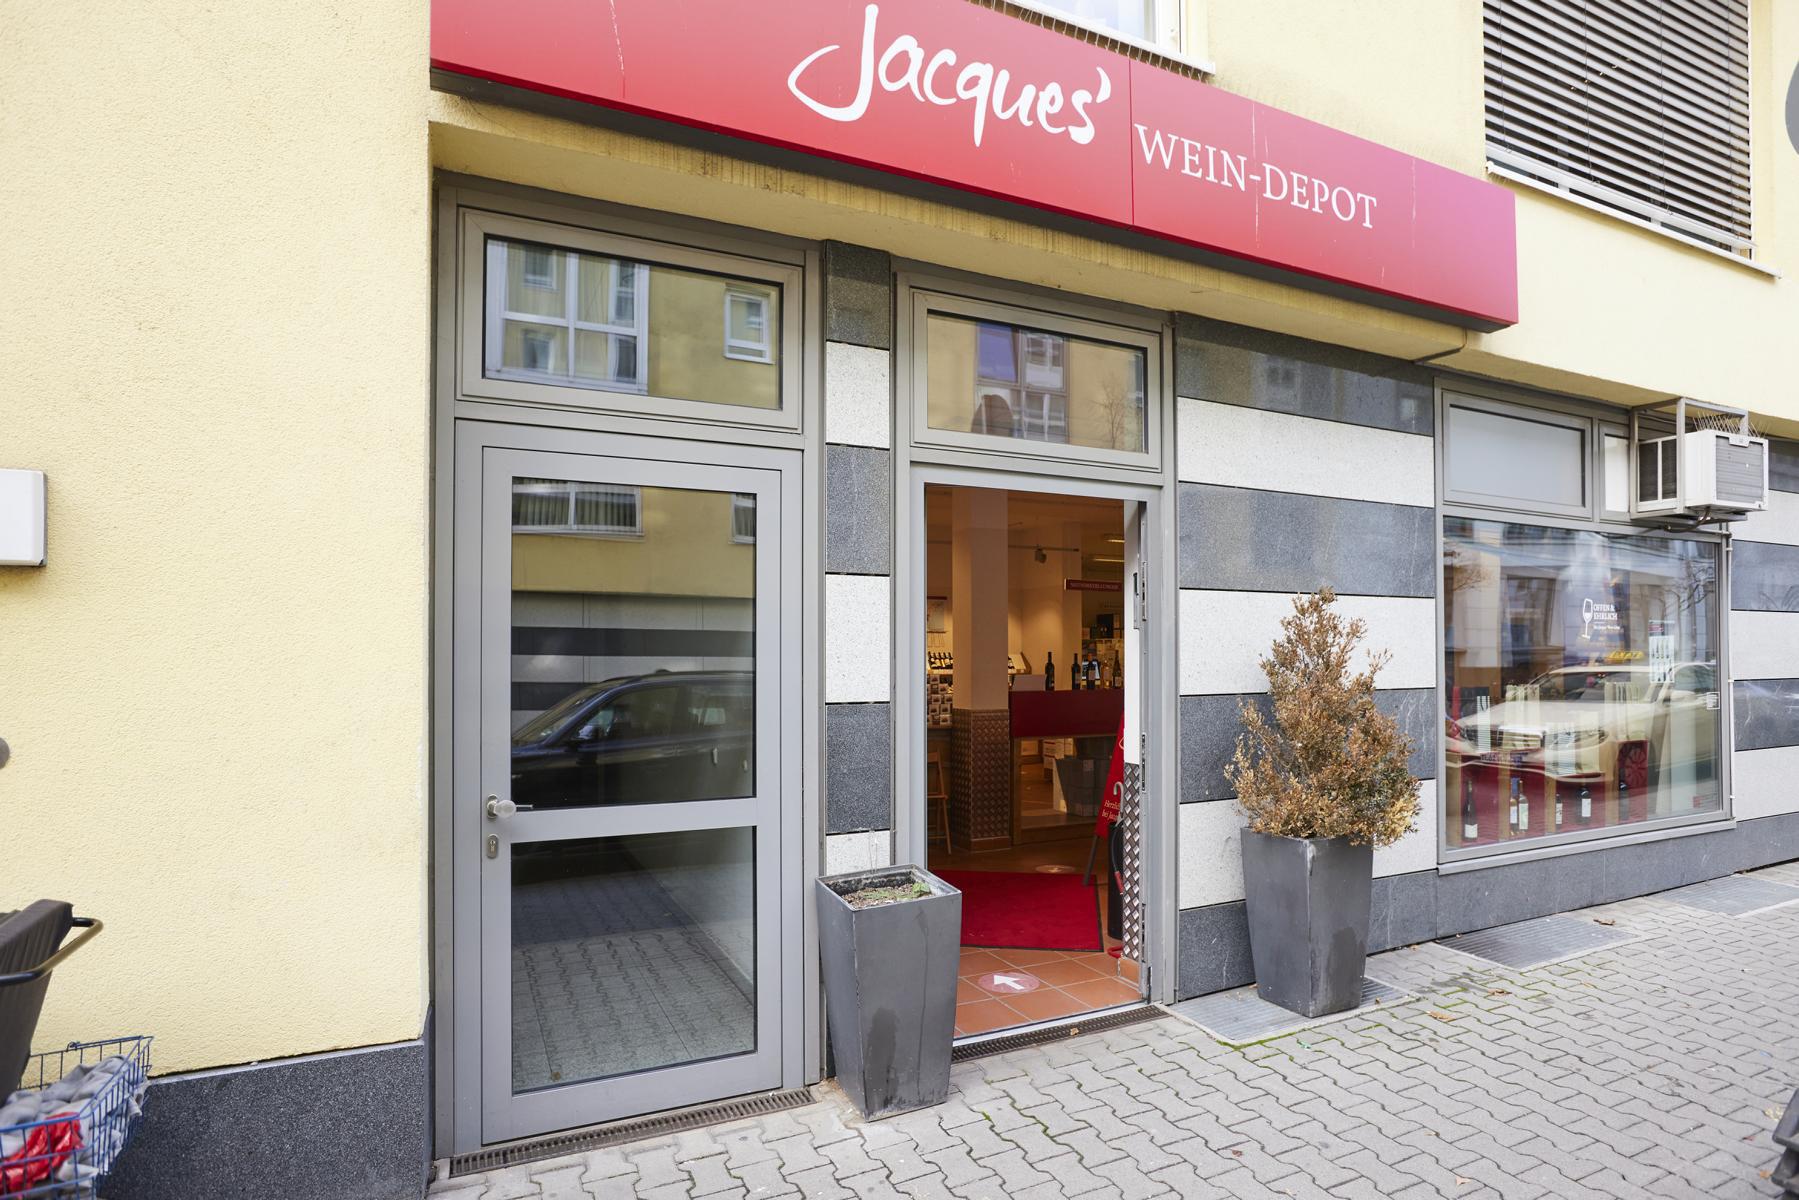 Bild 1 Jacques’ Wein-Depot Frankfurt-Bockenheim in Frankfurt